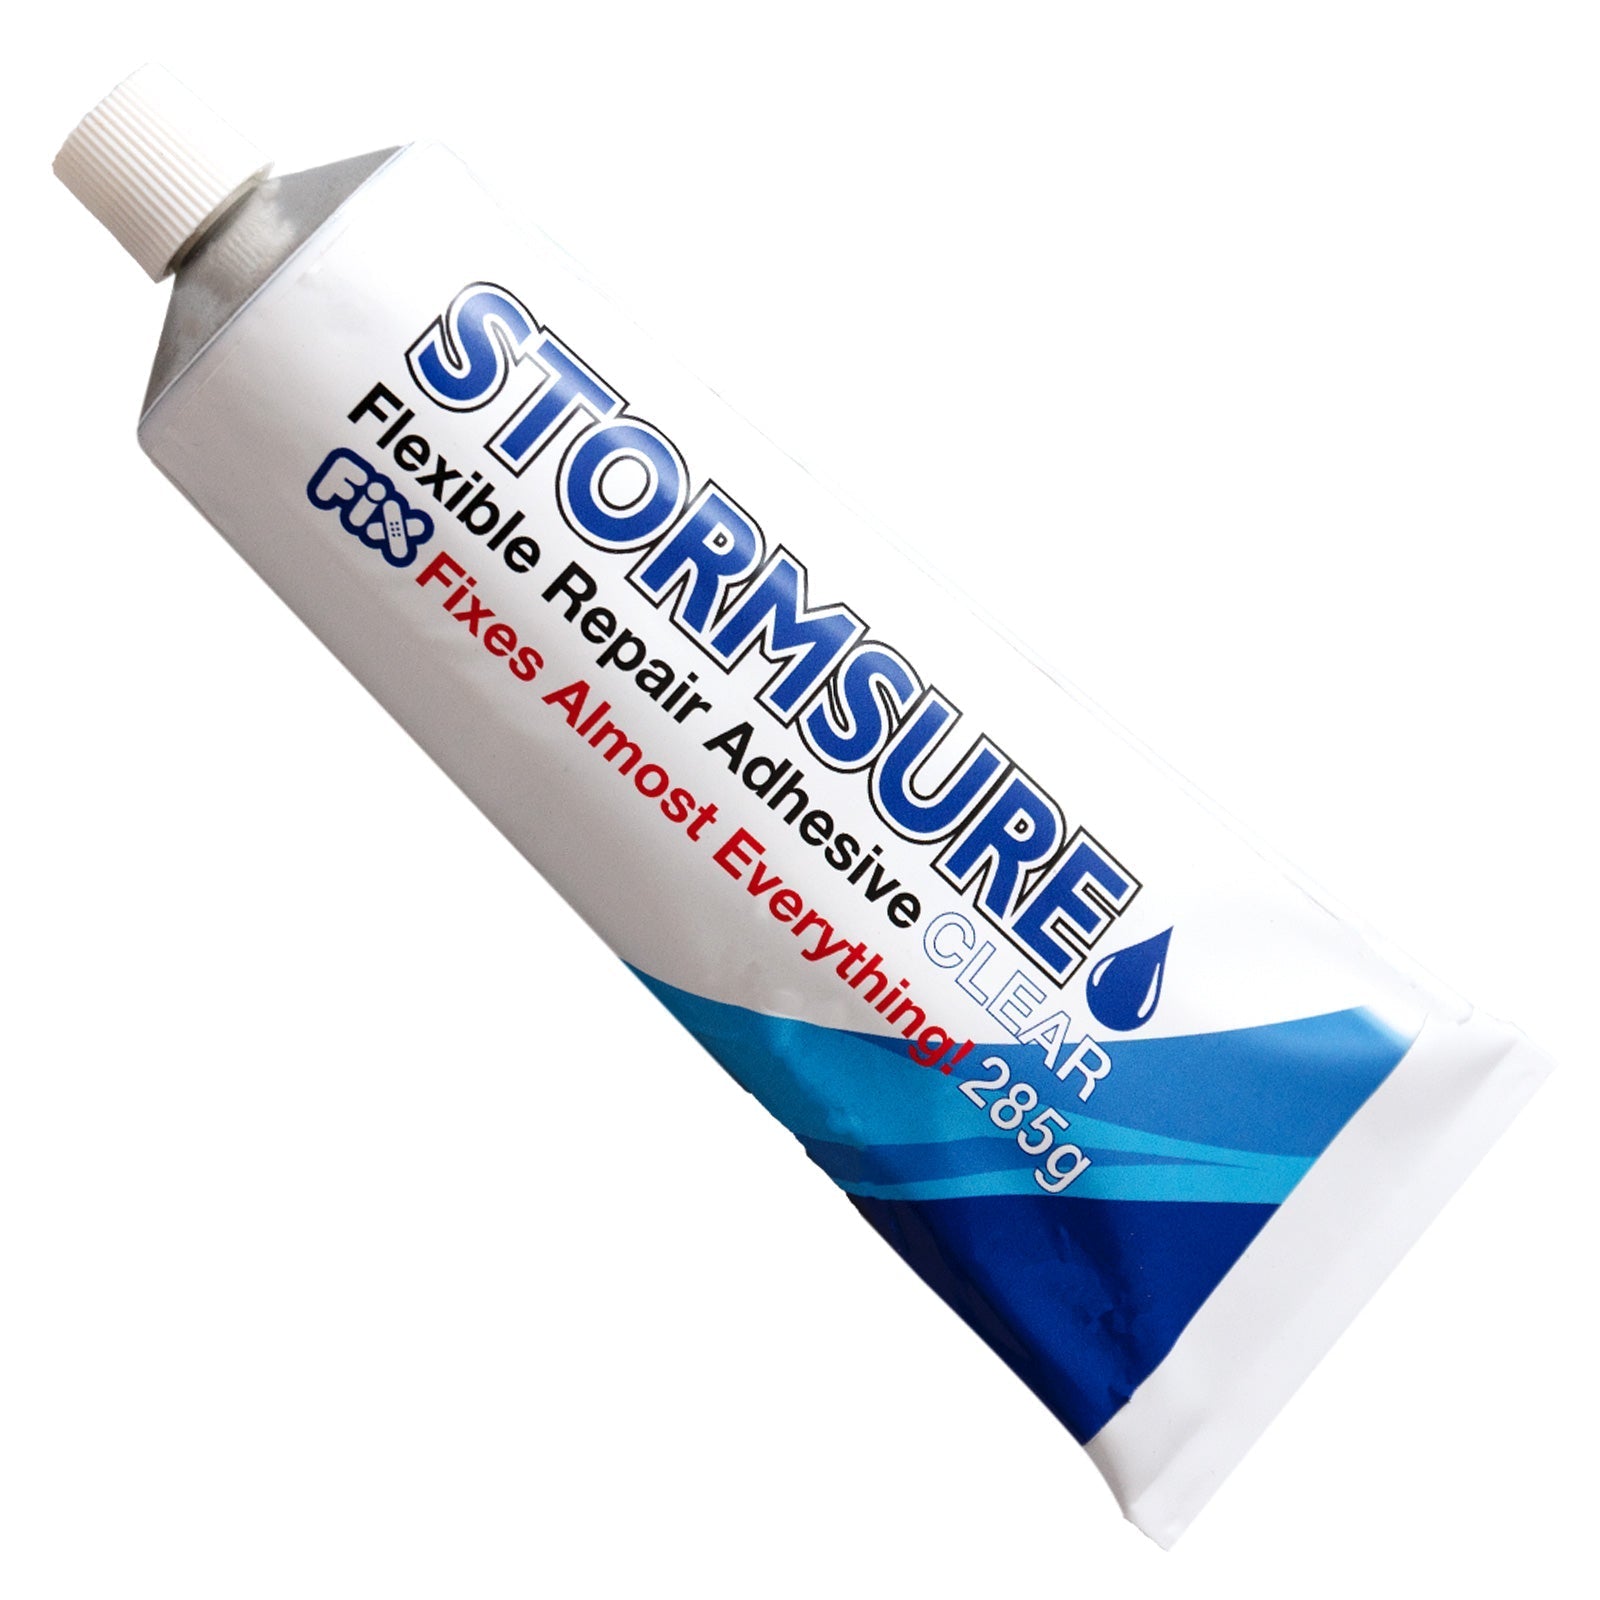 Stormsure Clear Flexible Repair Adhesive 285g